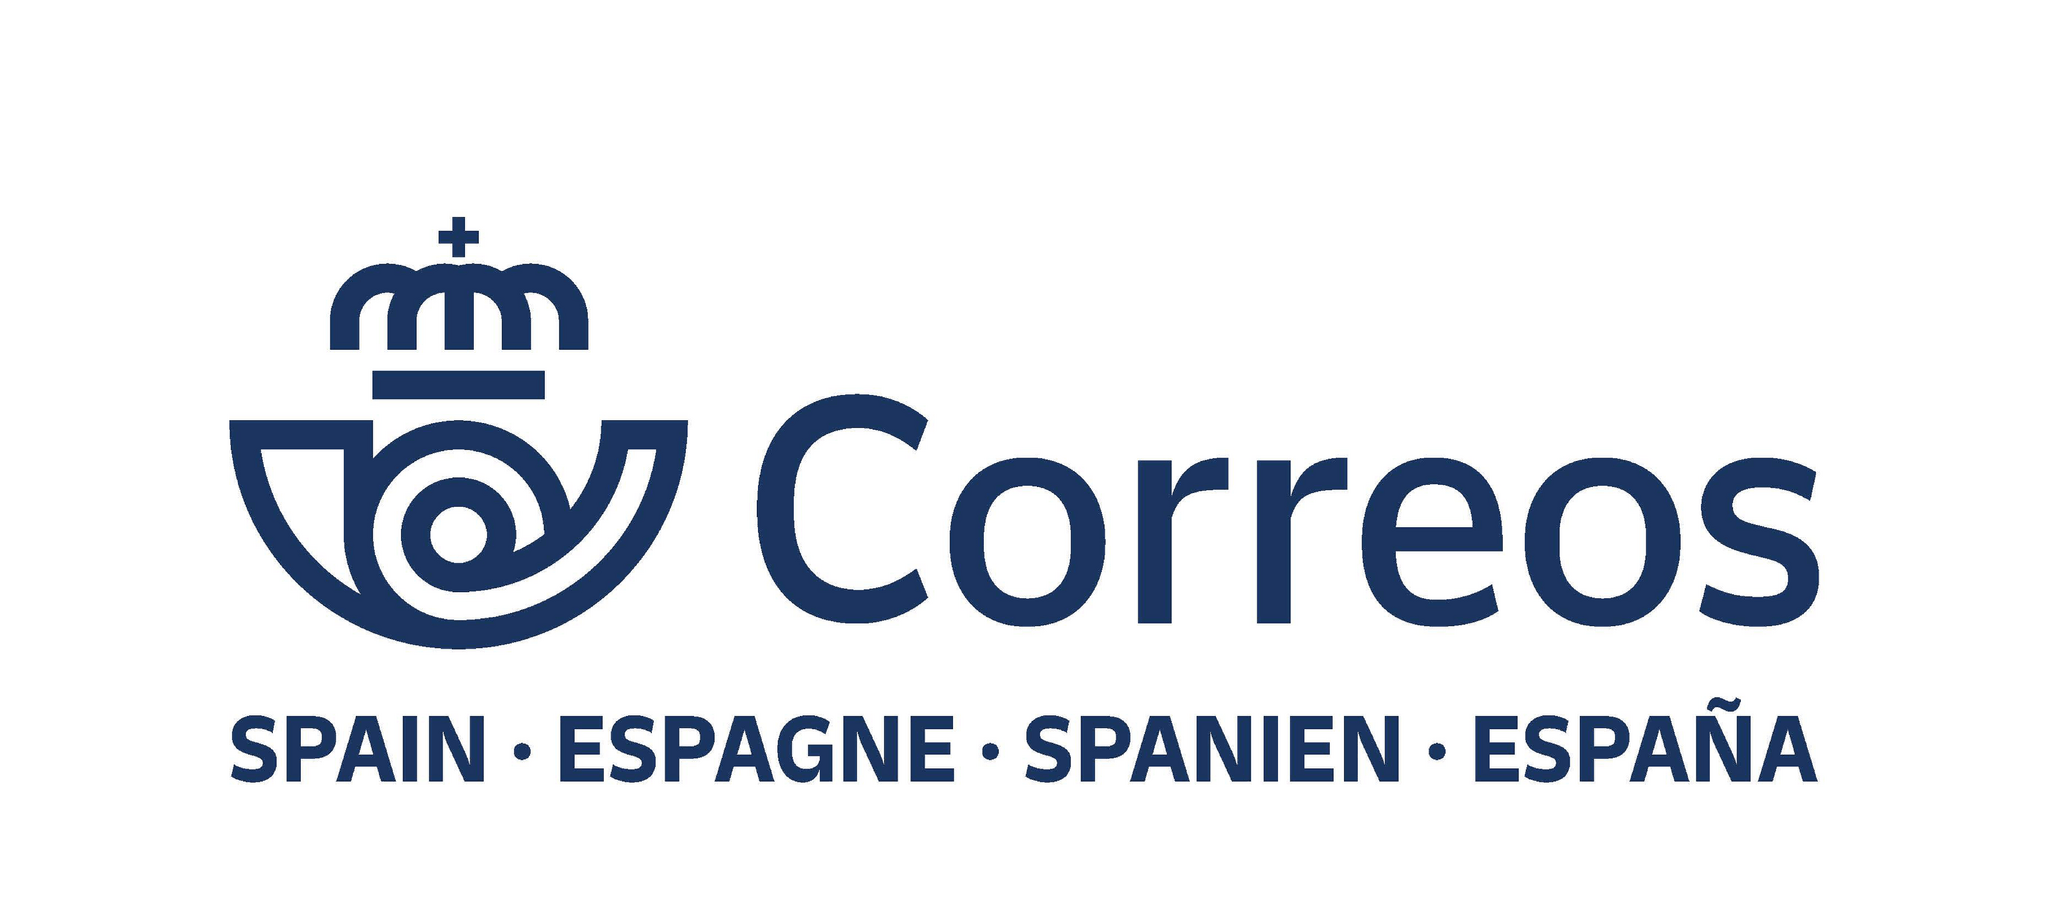 Correos Spain